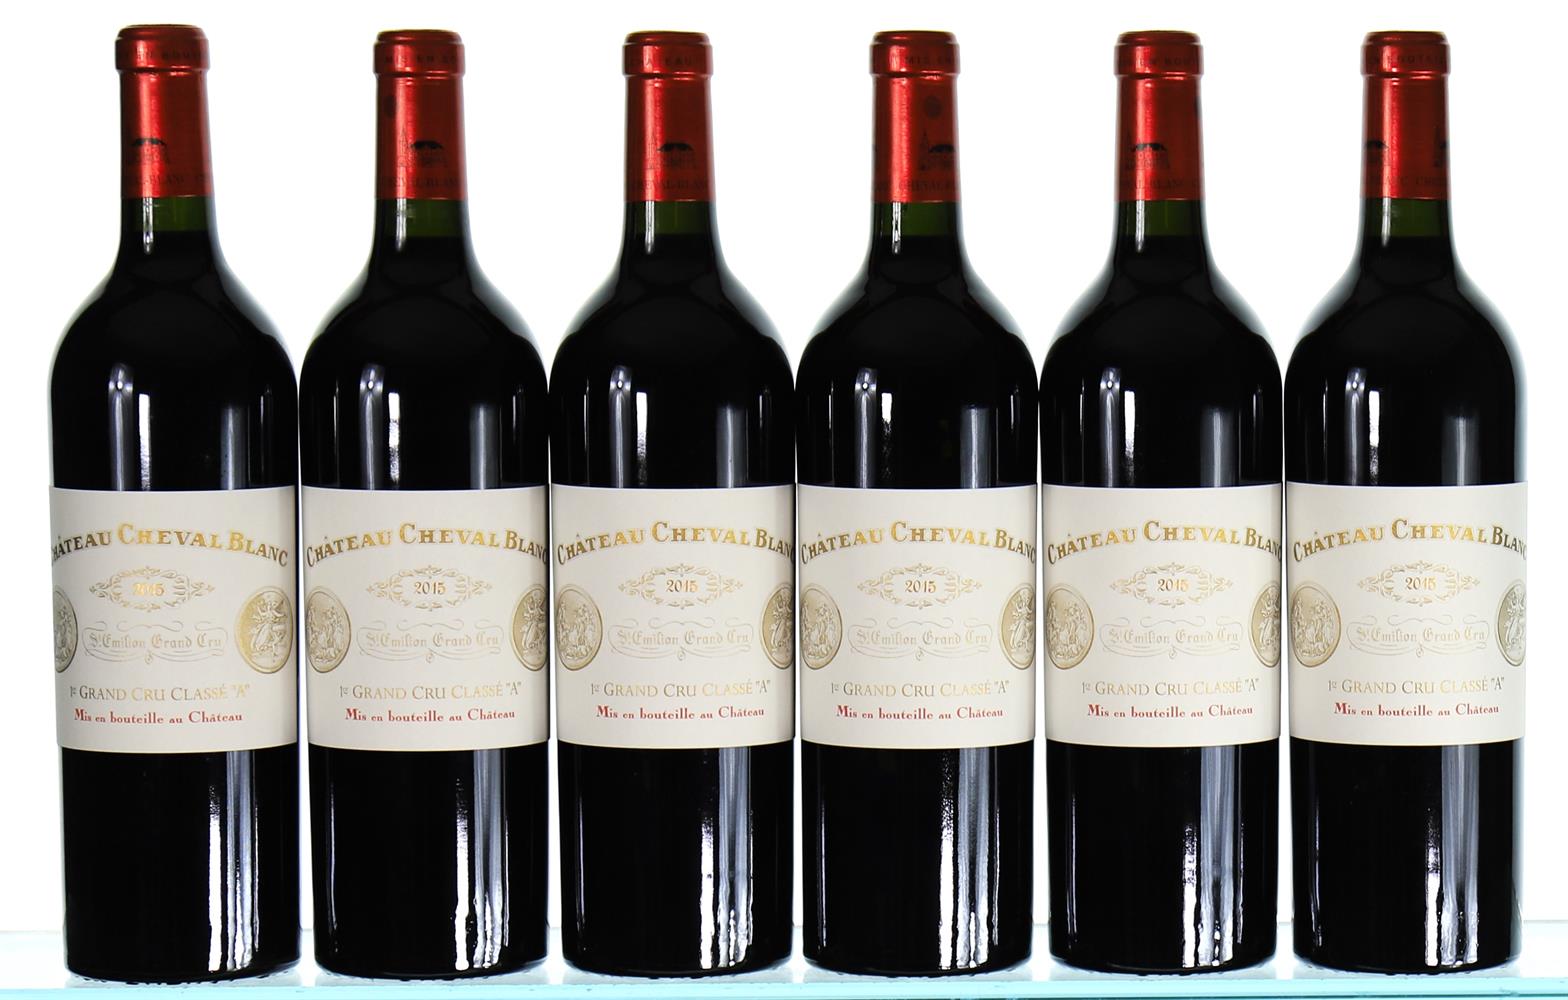 ß 2015 Chateau Cheval Blanc Premier Grand Cru Classe A, Saint-Emilion Grand Cru - In Bond